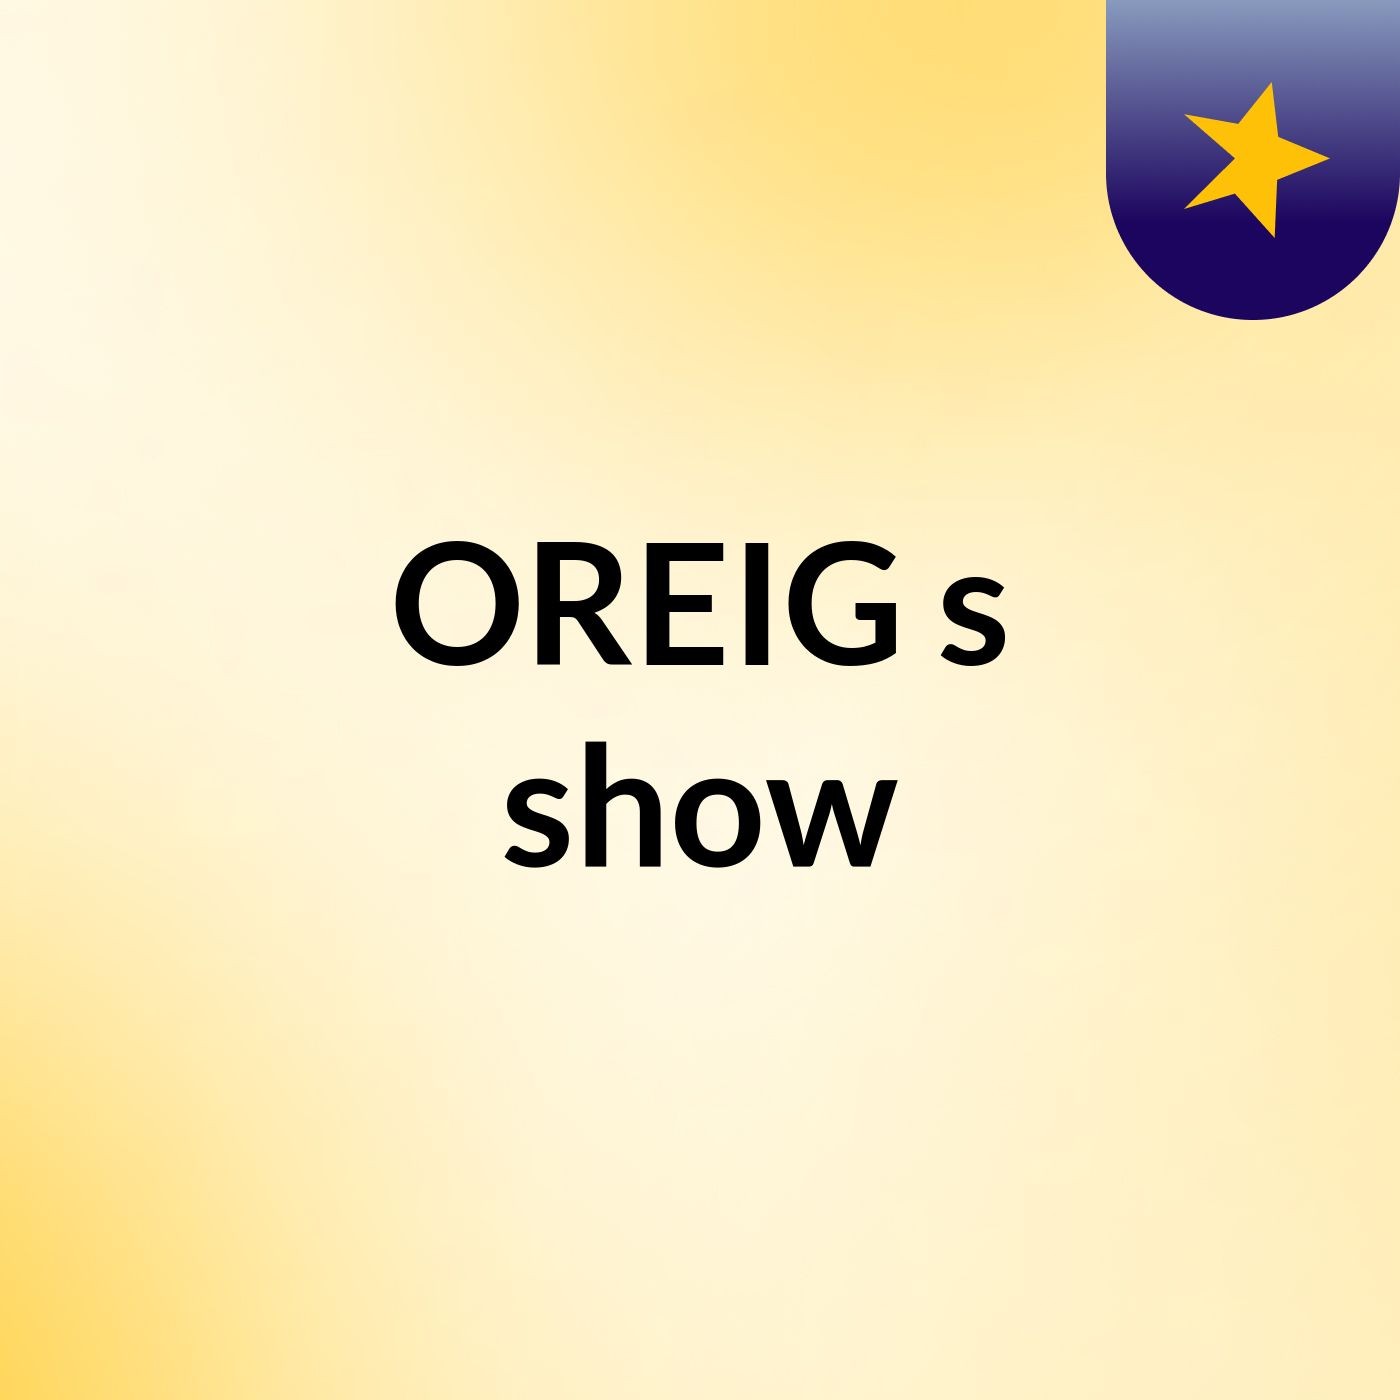 OREIG's show